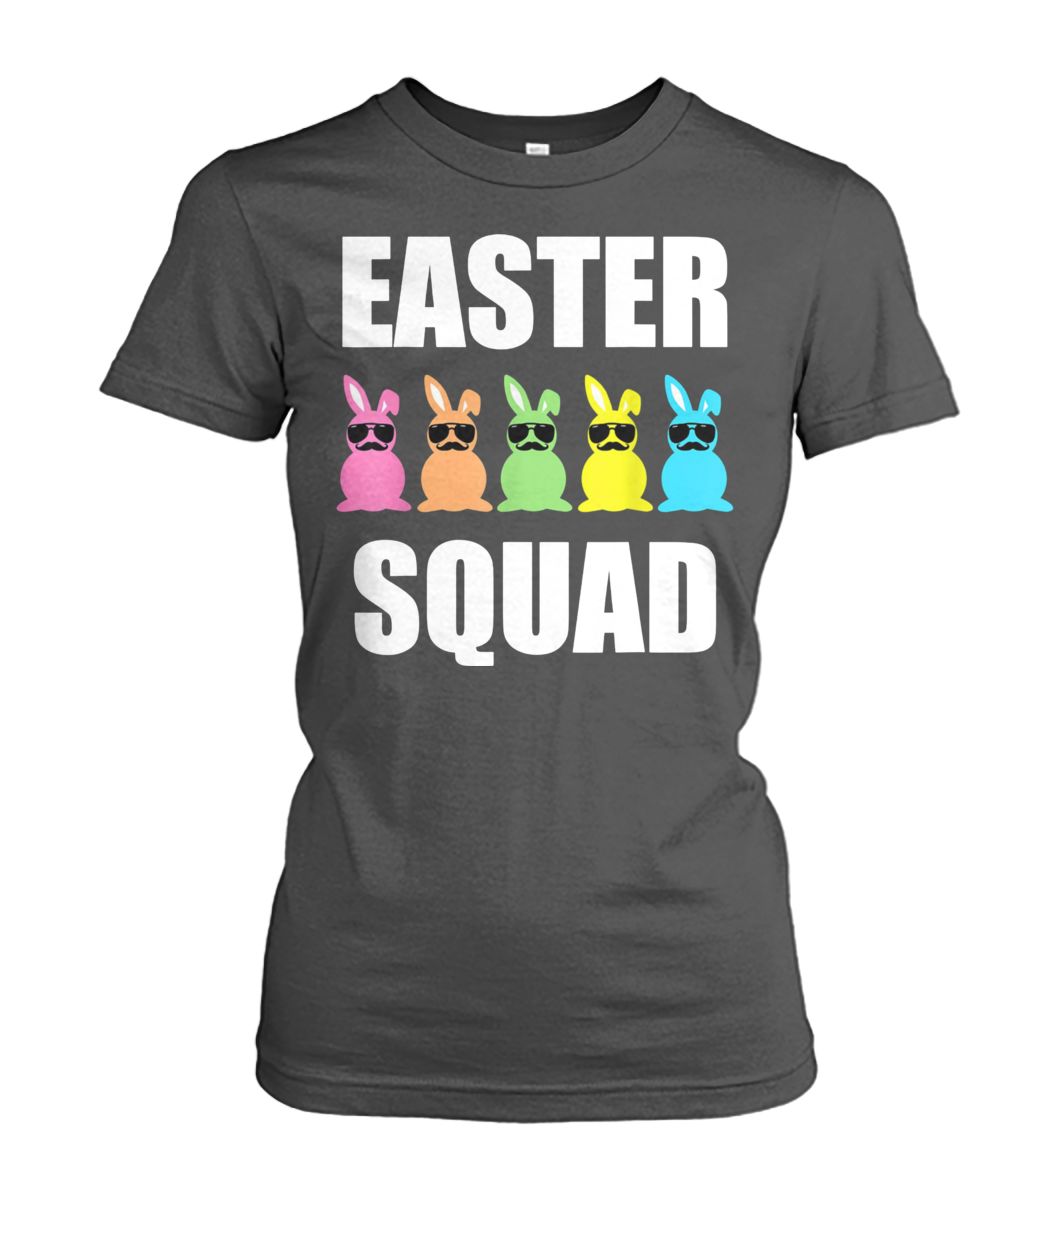 Easter bunny squad women's crew tee